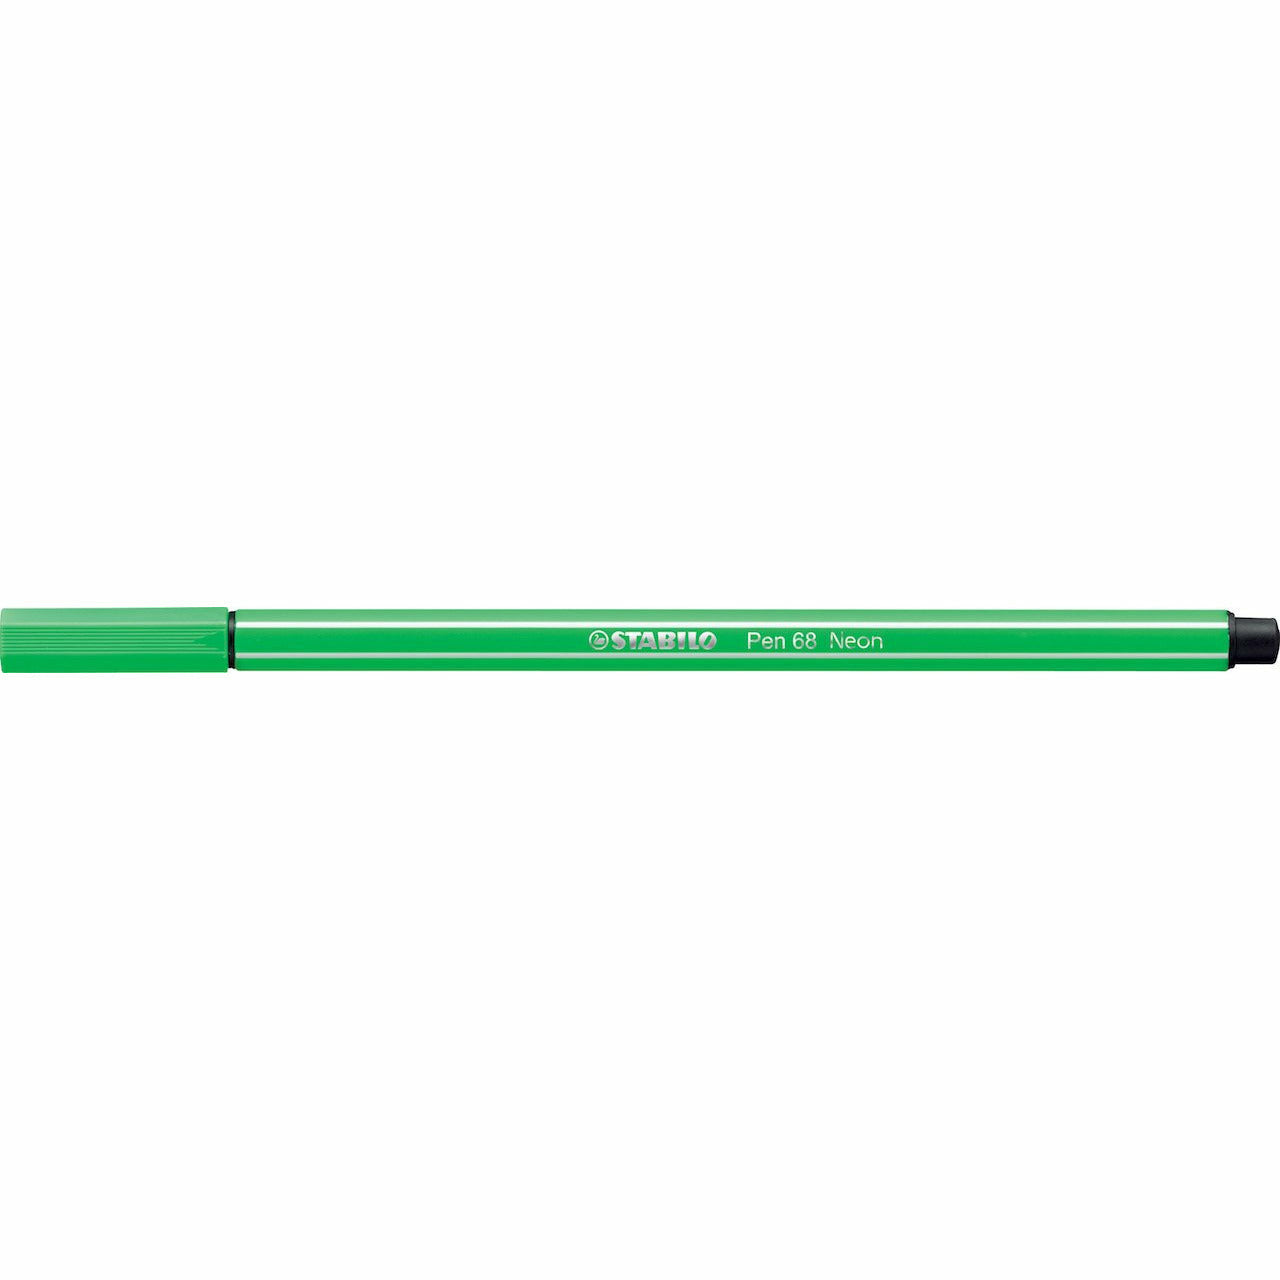 STABILO Pen 68 leuchtfarbengrün